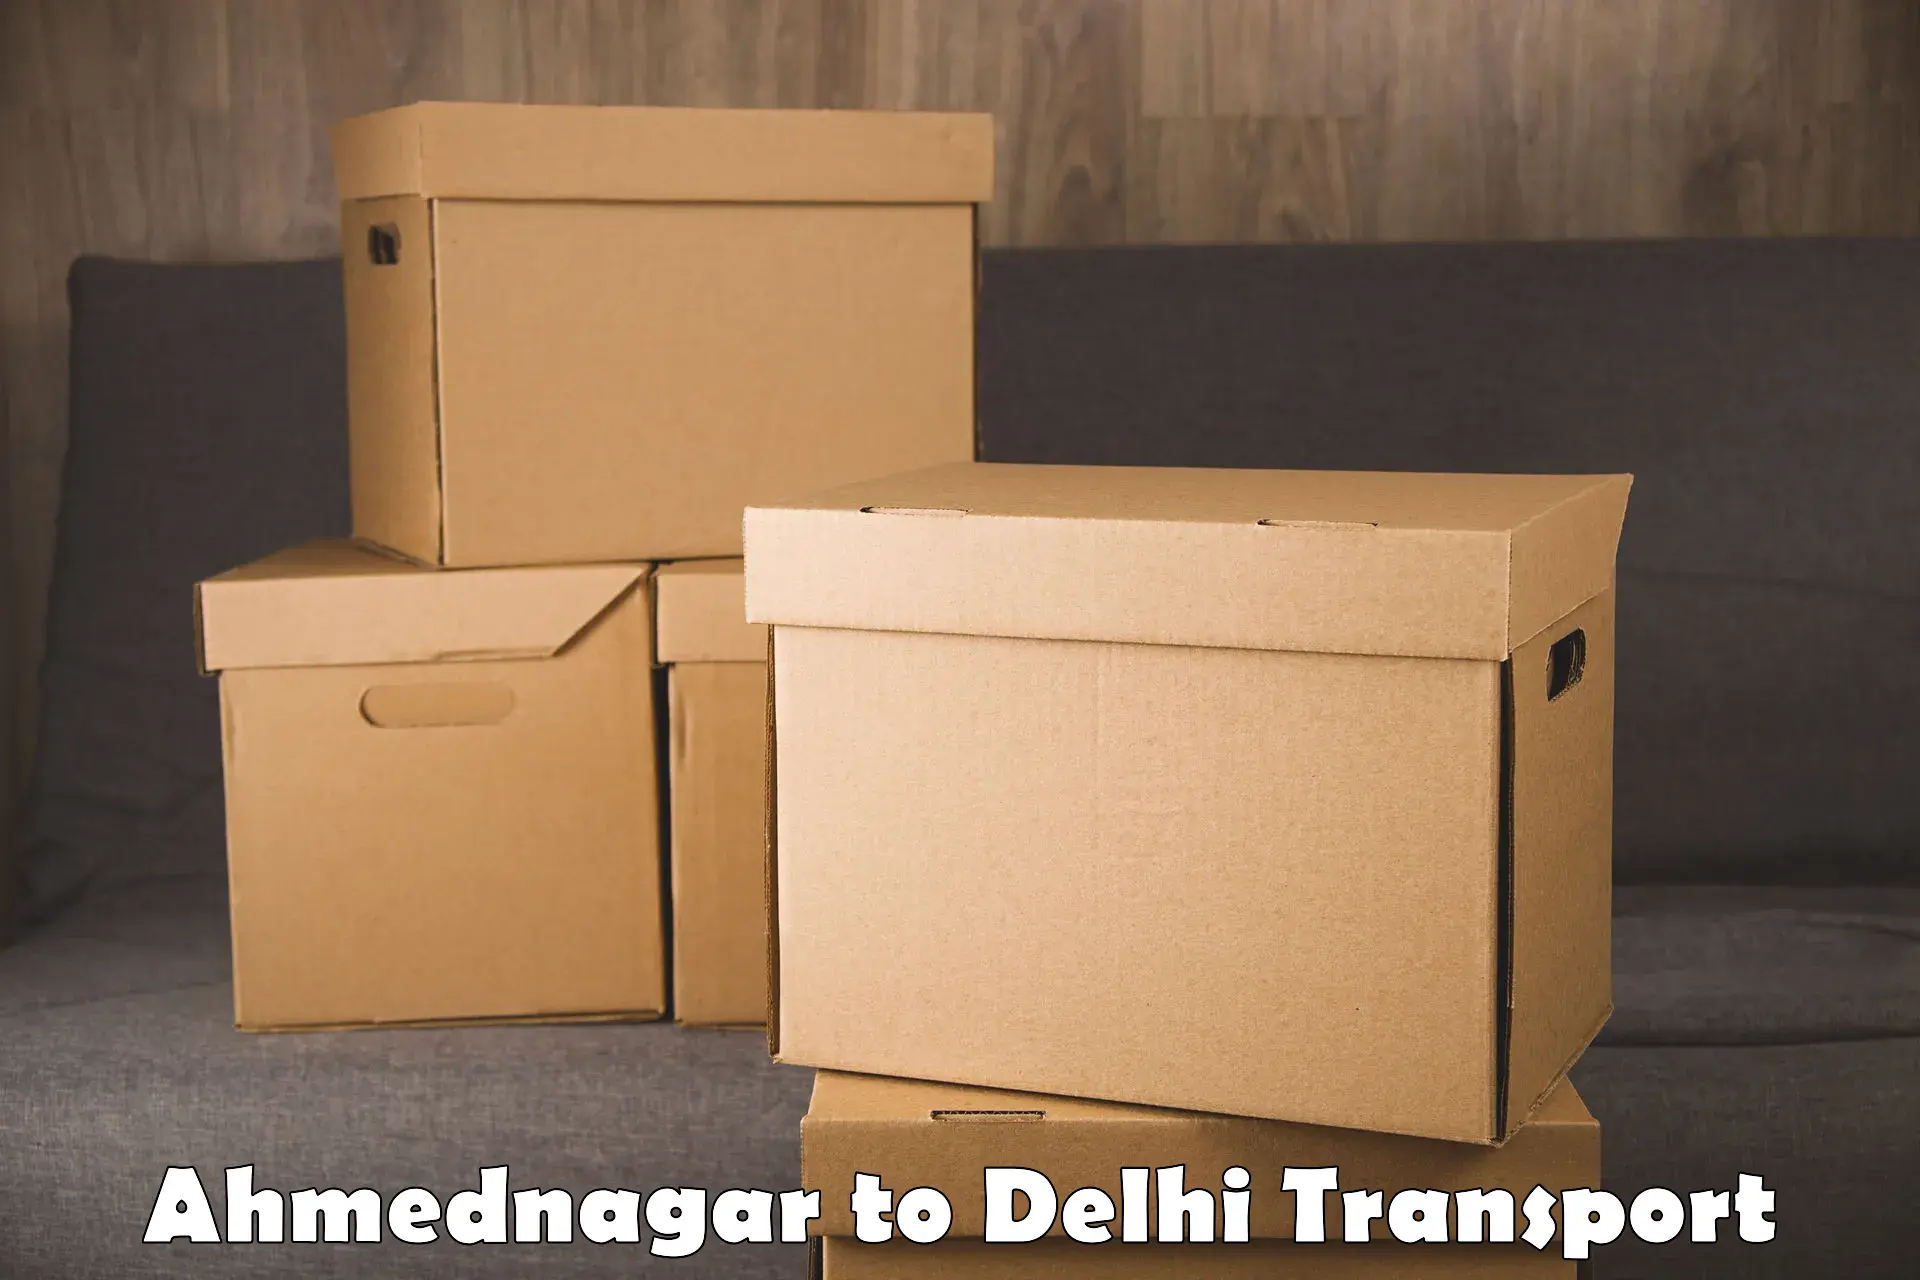 Daily parcel service transport Ahmednagar to East Delhi